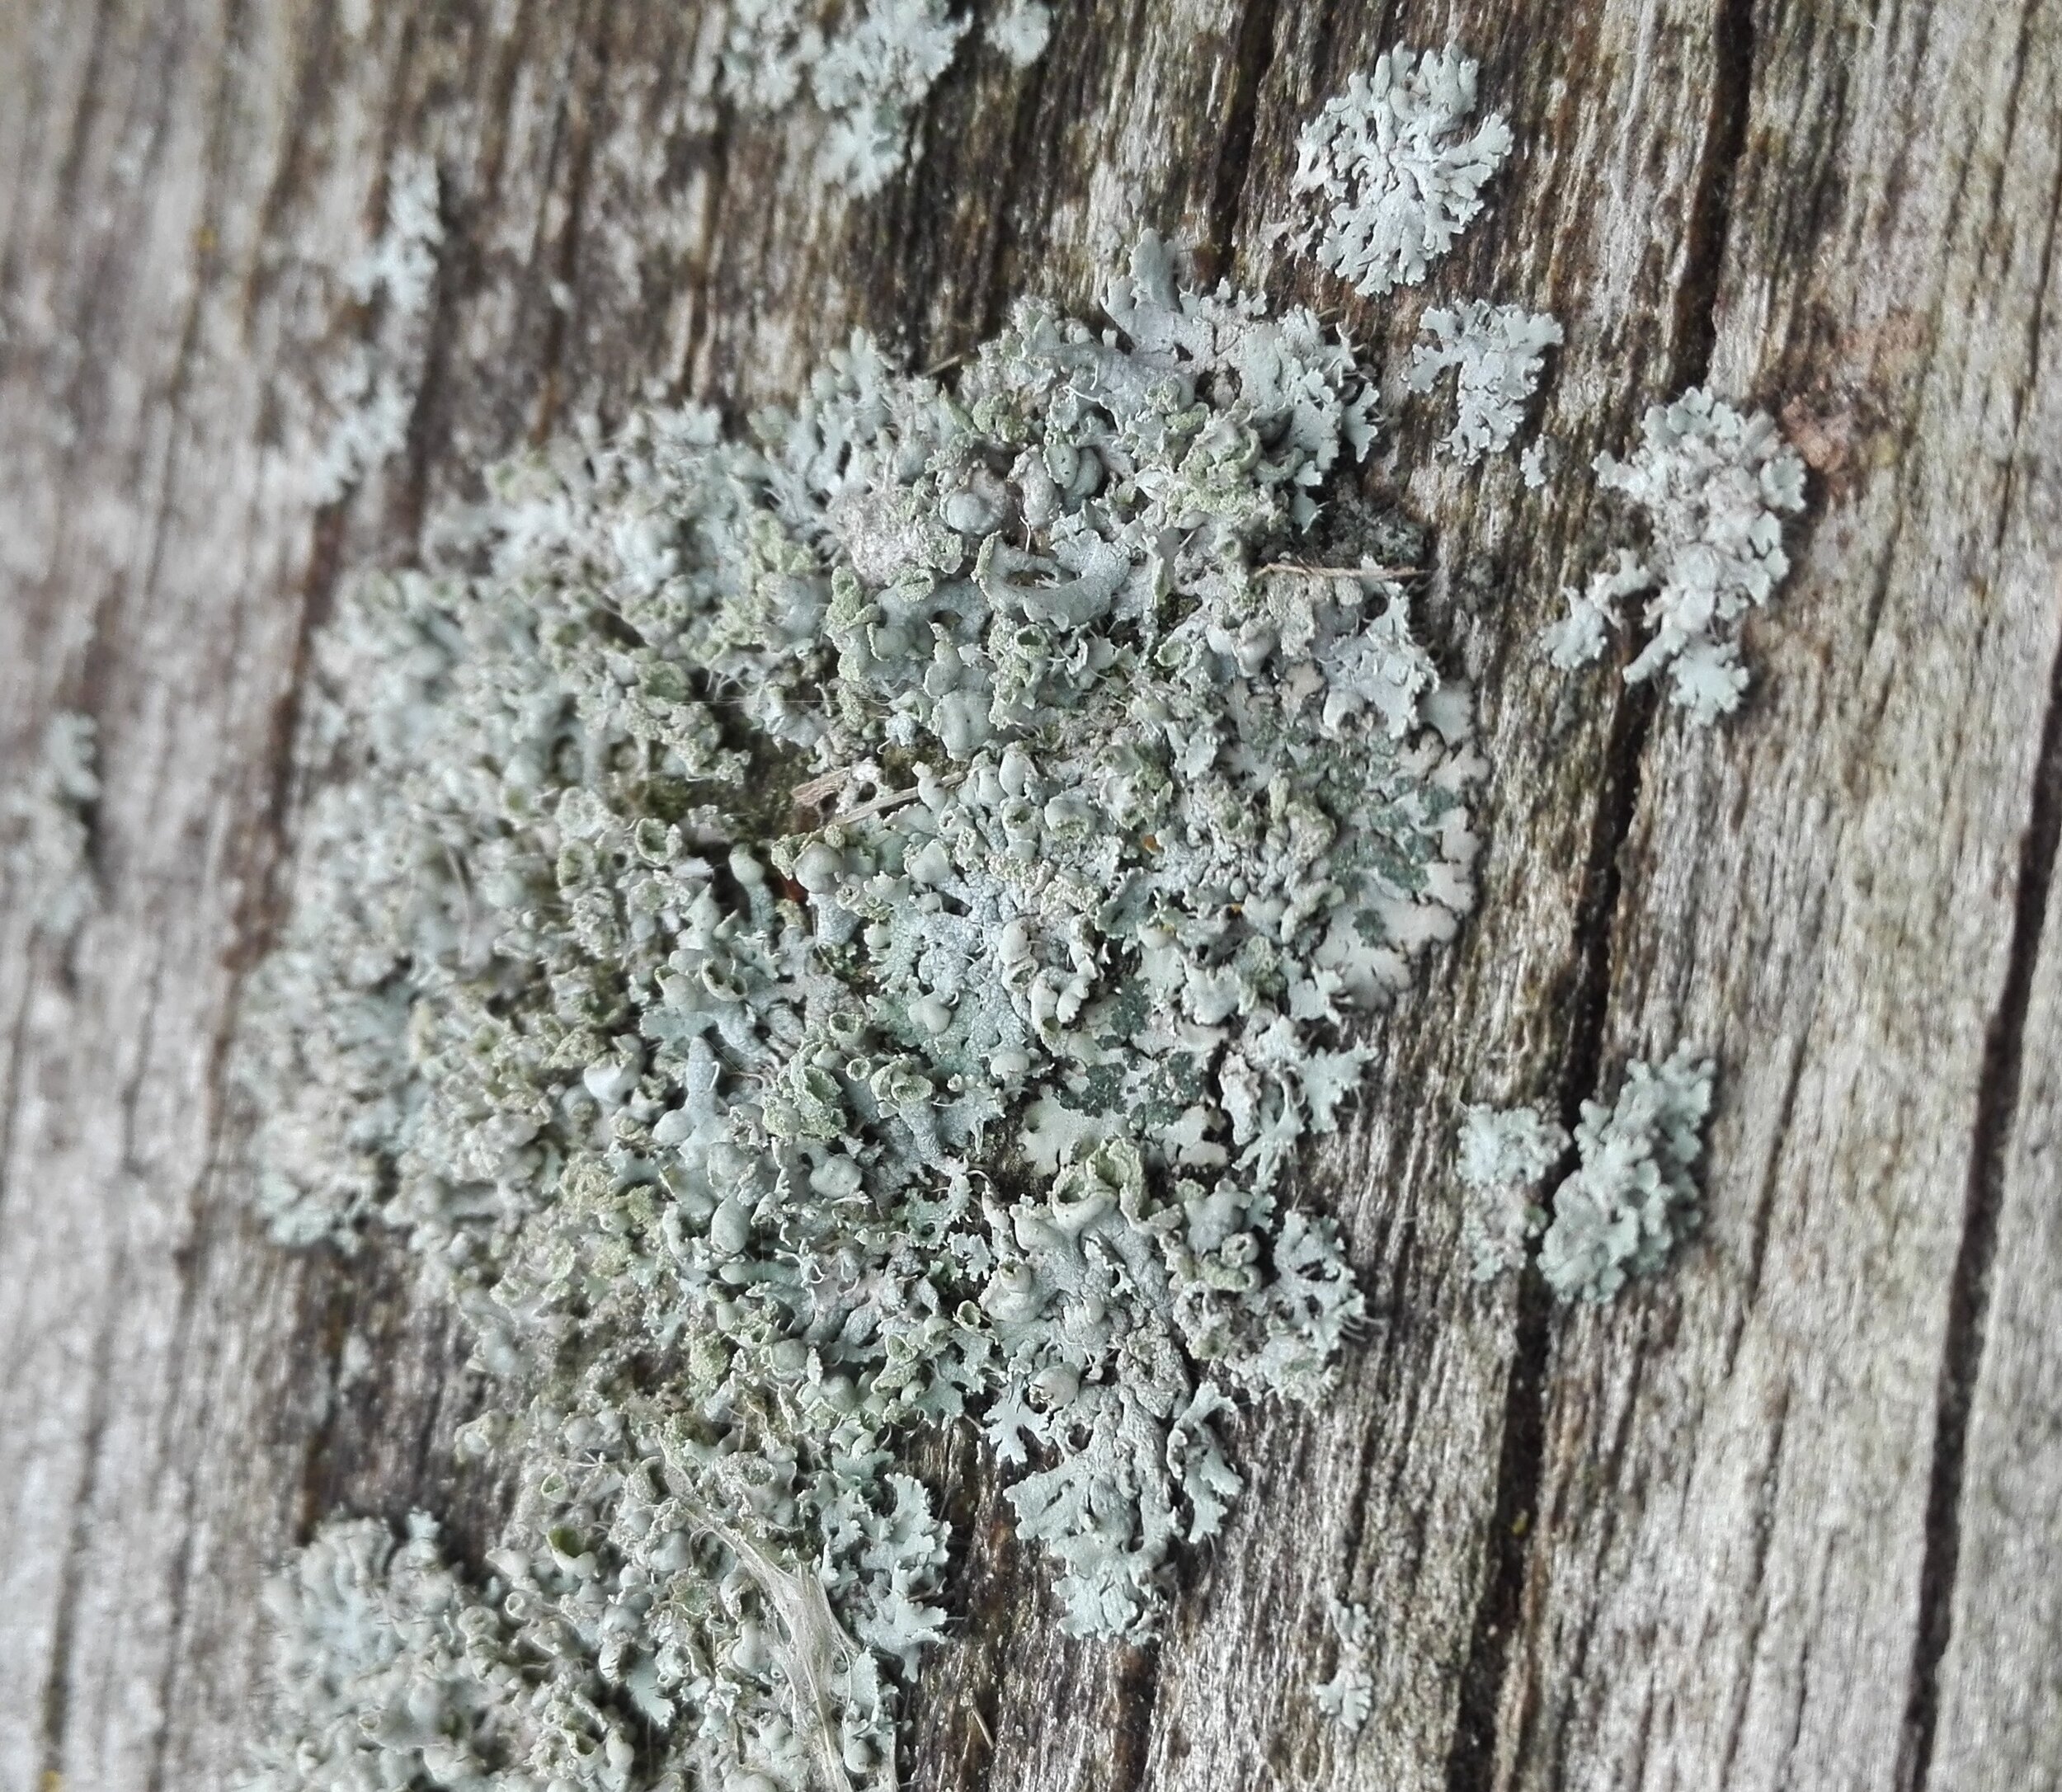 #275 Physcia caesia lichen